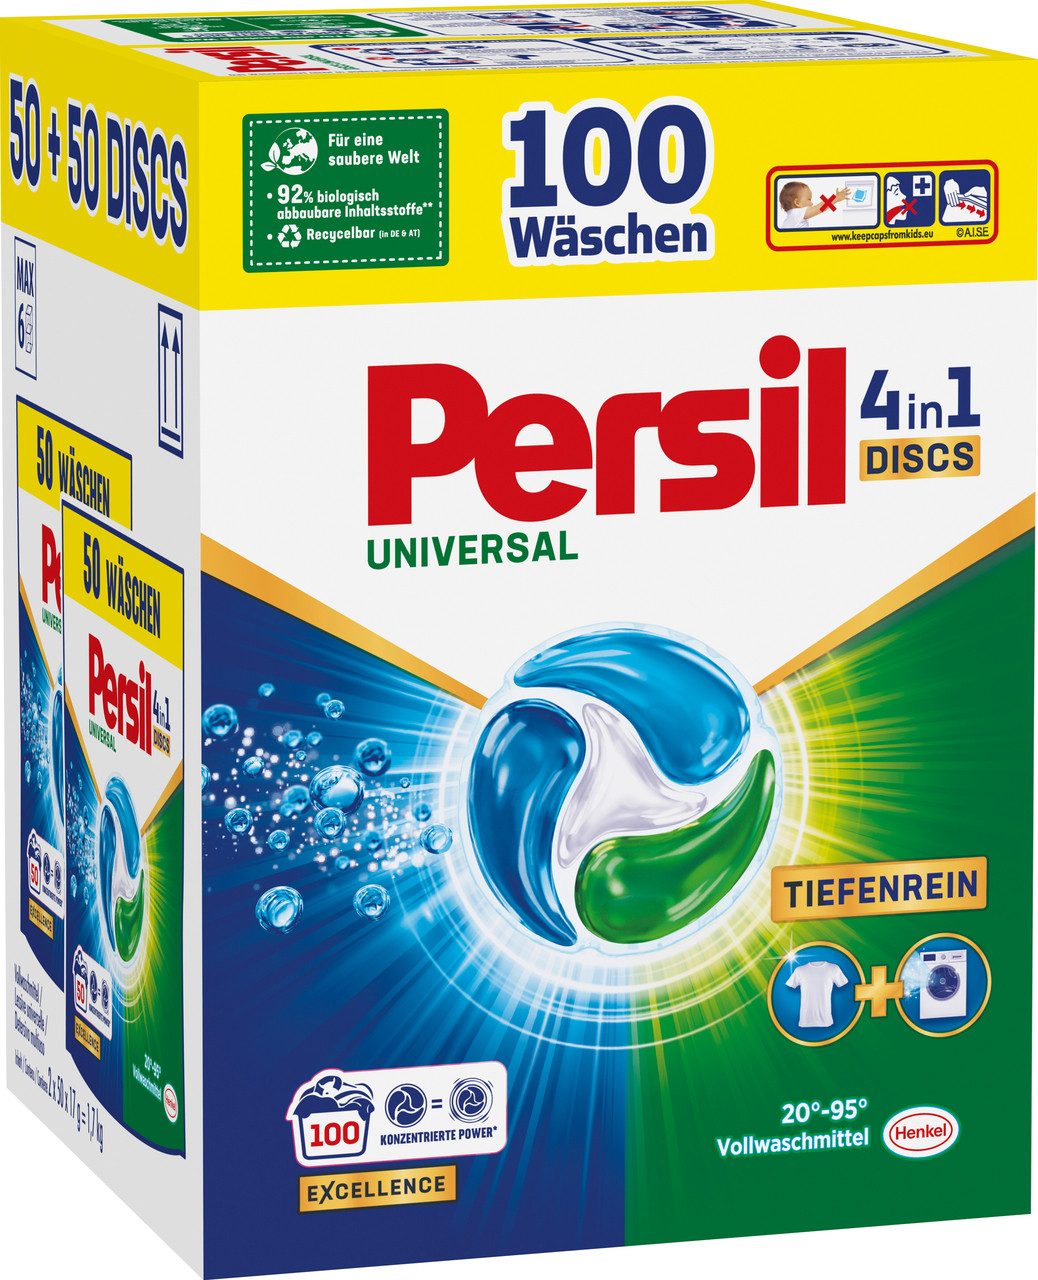 Persil Universal 4-in-1 Discs 100 WL Vollwaschmittel (Vorratspack, [100-St. Kapseln mit Tiefenrein Technologie)